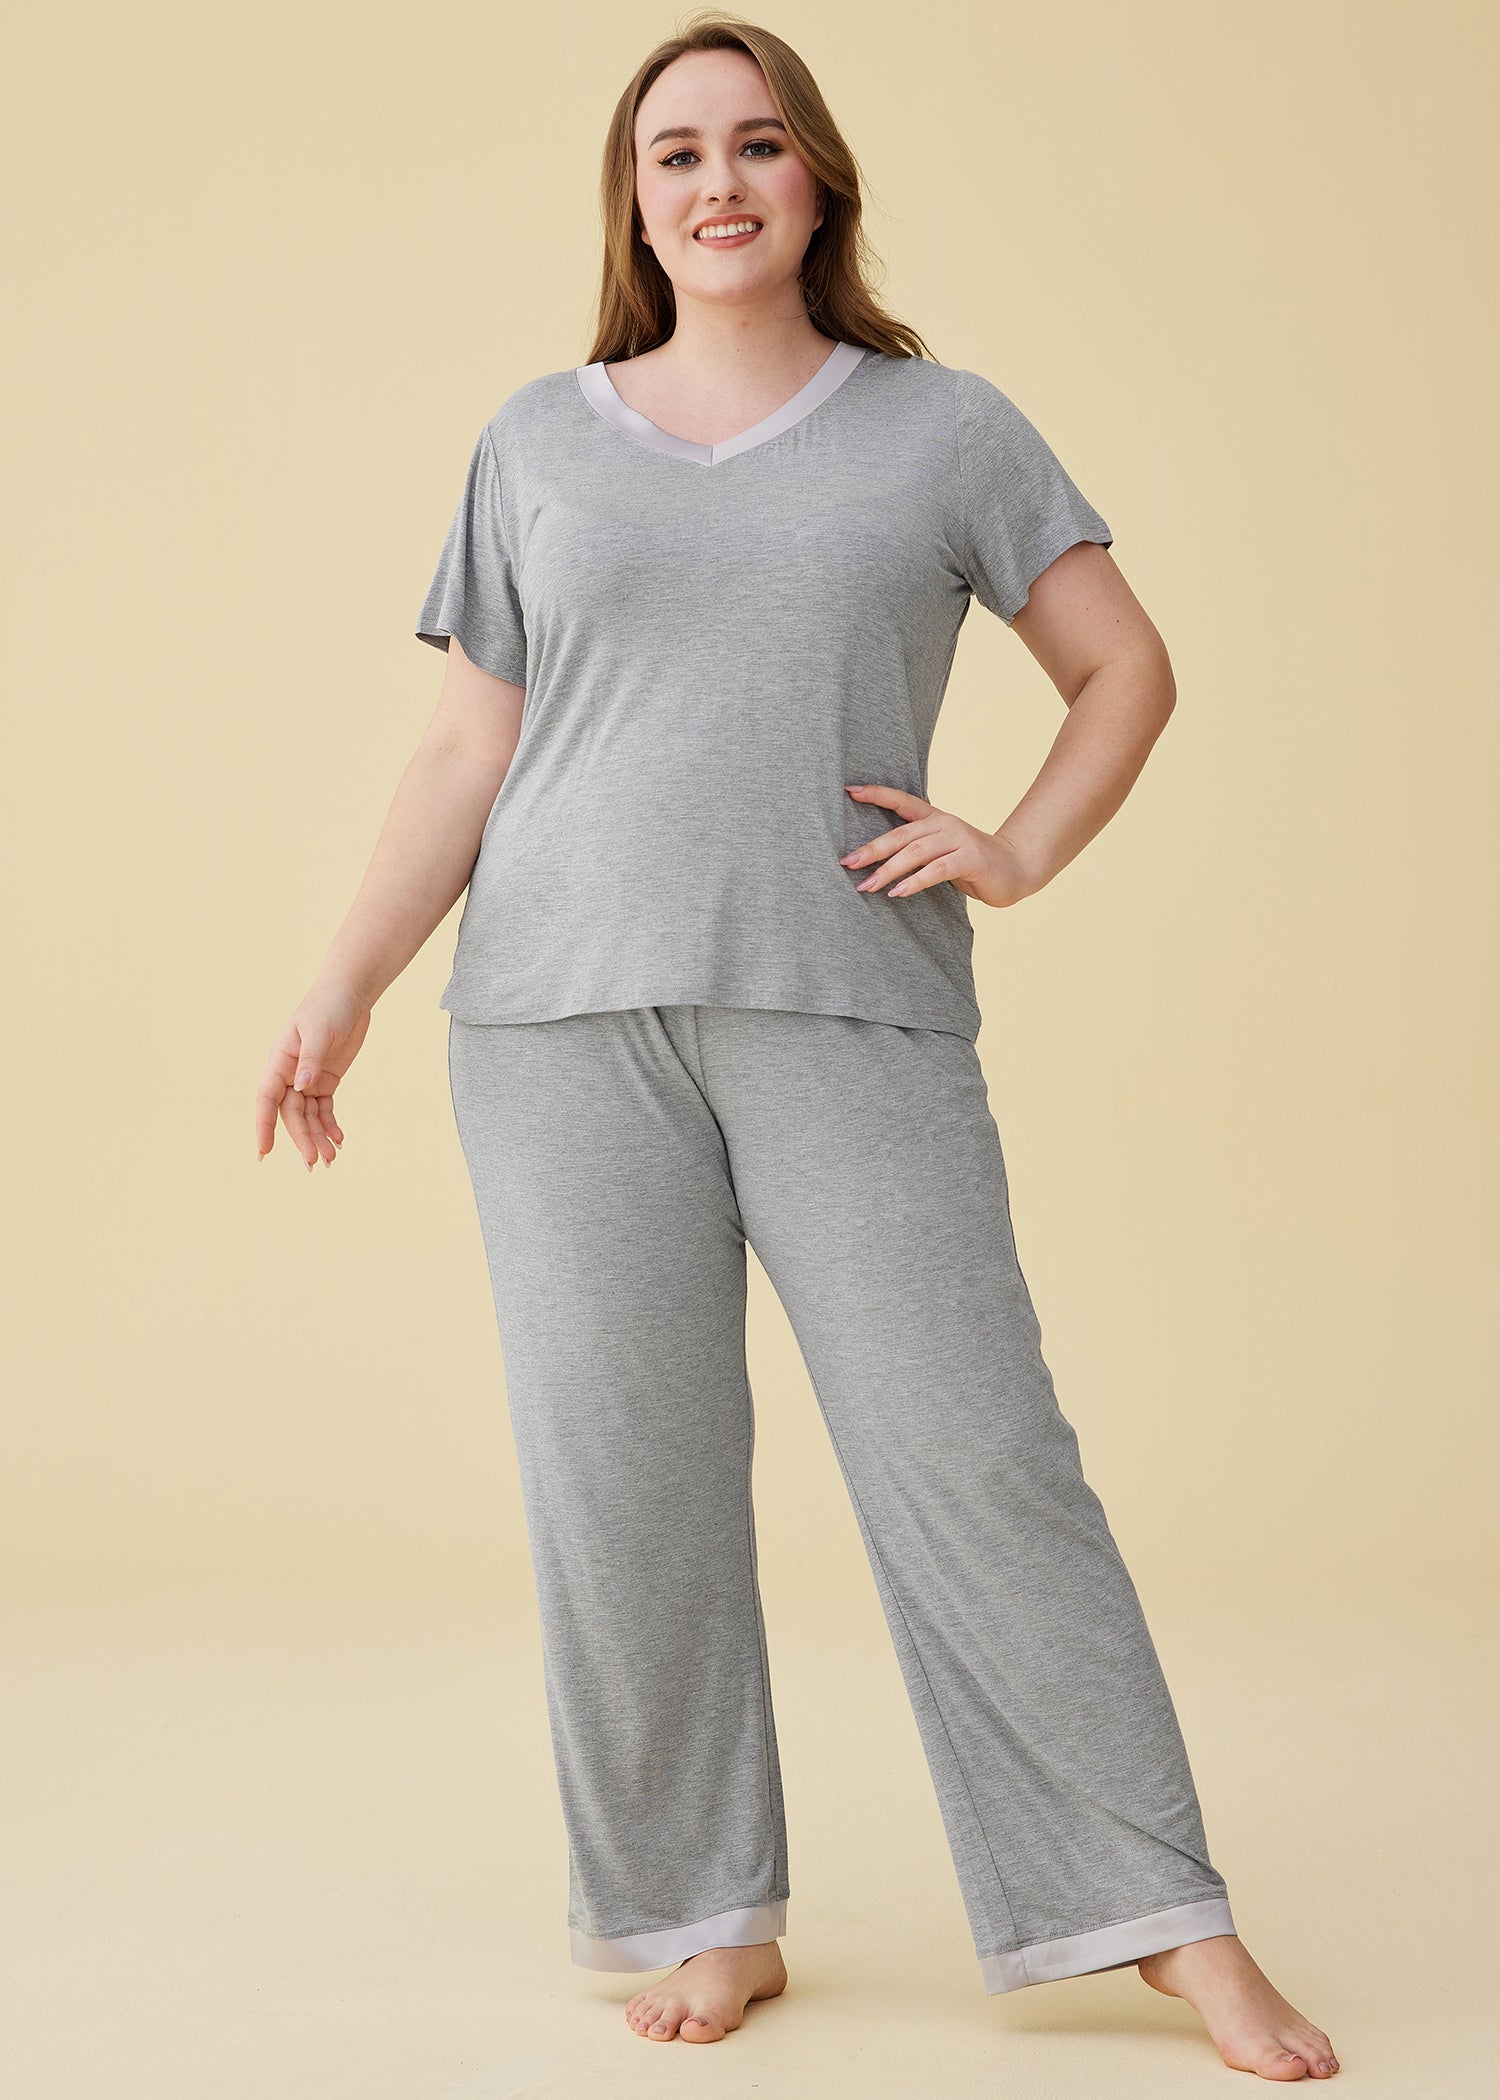 Women's Plaid Fleece Pajamas Set Notch Collar Shirt and Pants – Latuza